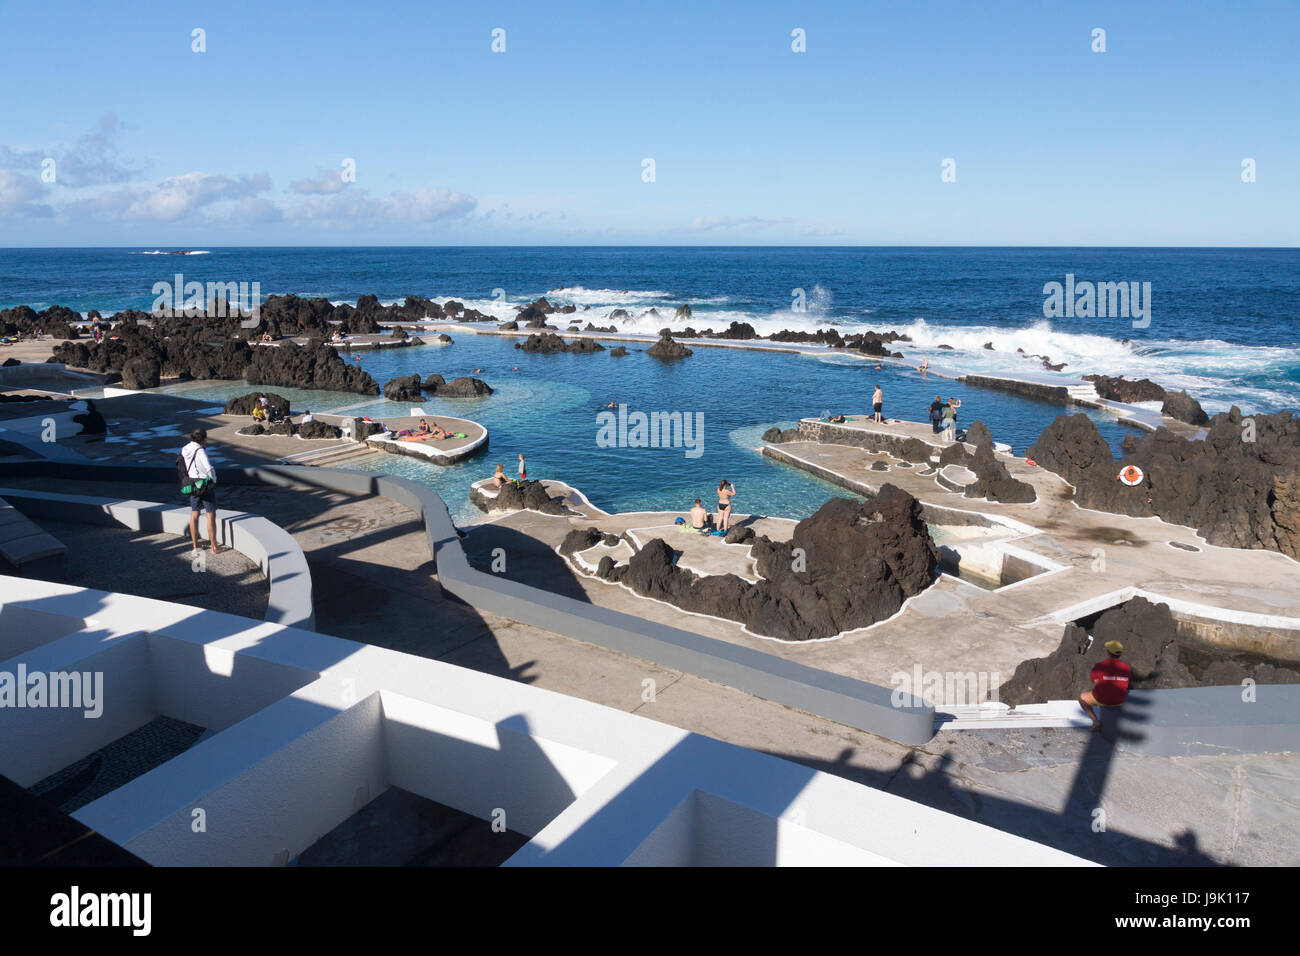 Natürliche Fels-Pools, die zu einem Baden Komplex bietet ein abwechslungsreiches Erlebnis - Complexo Balnear - bei Porto Moniz Madeira geworden sind Stockfoto